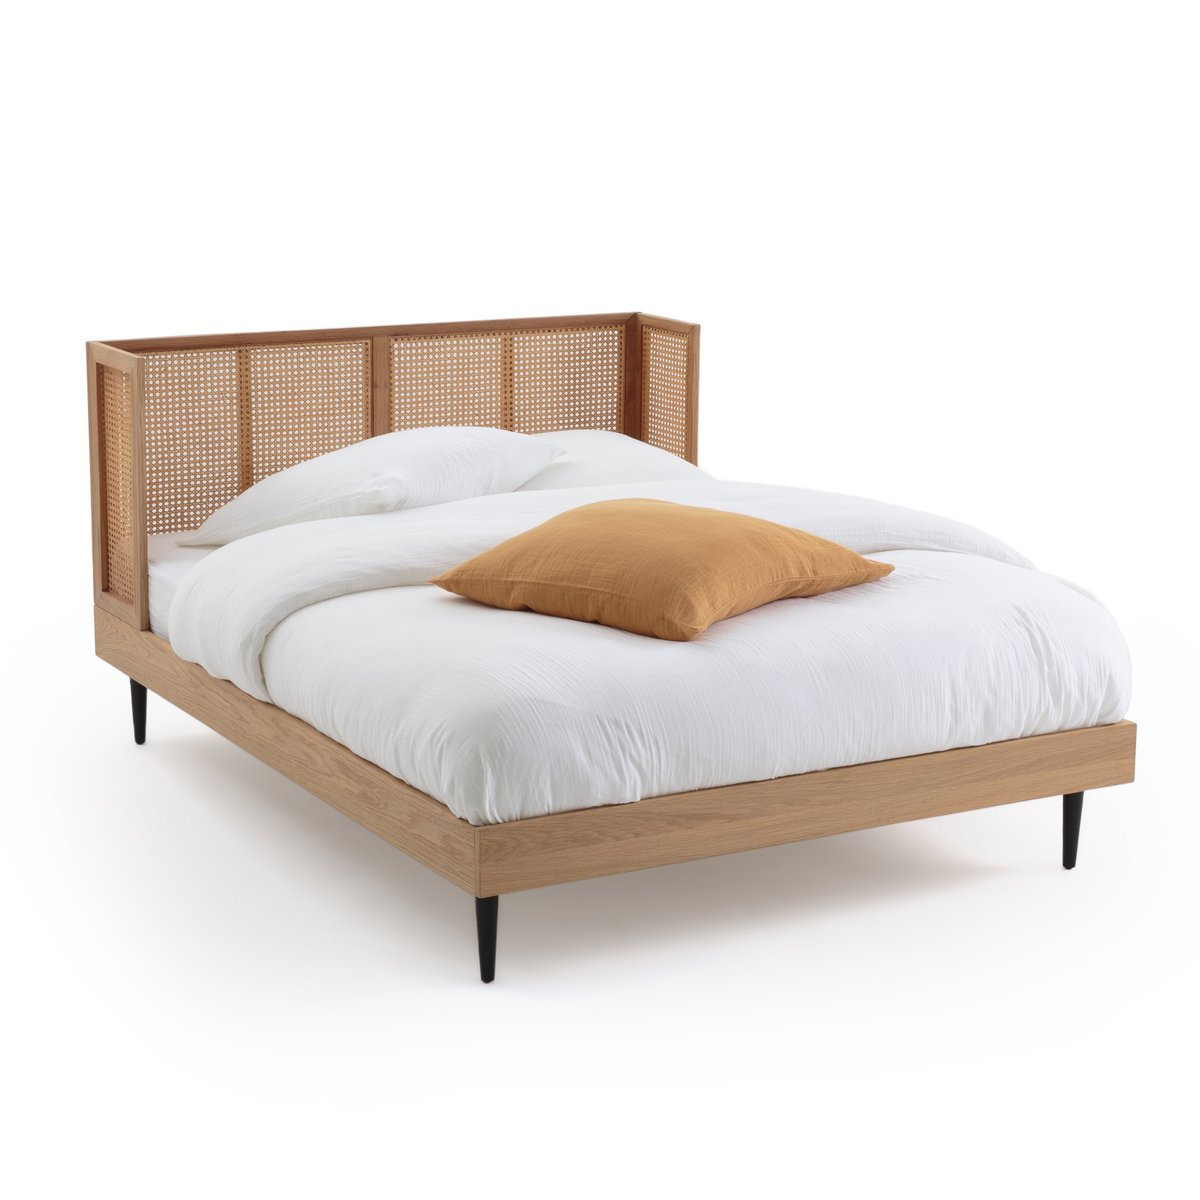 Кровать Из плетеного ротанга с основанием WASKA 140 x 190 см каштановый